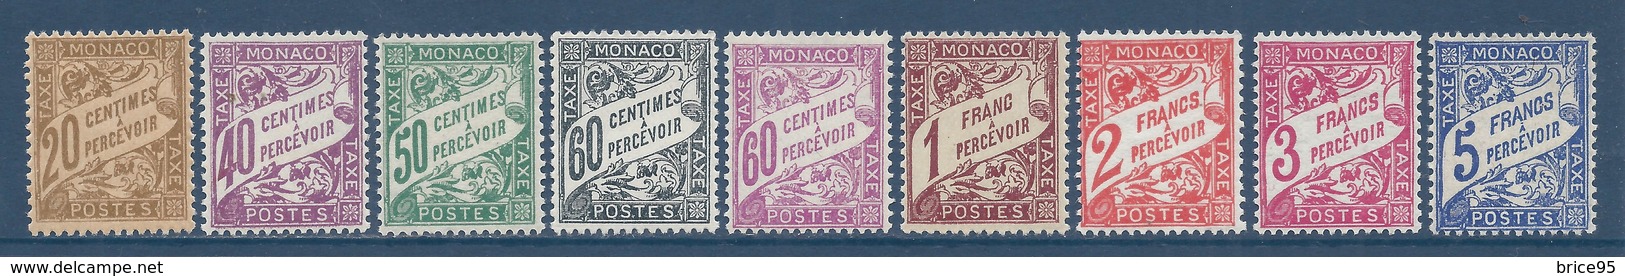 Monaco Taxe - YT N° 18 à 26  - Neuf Avec Charnière - 1926 à 1943 - Postage Due